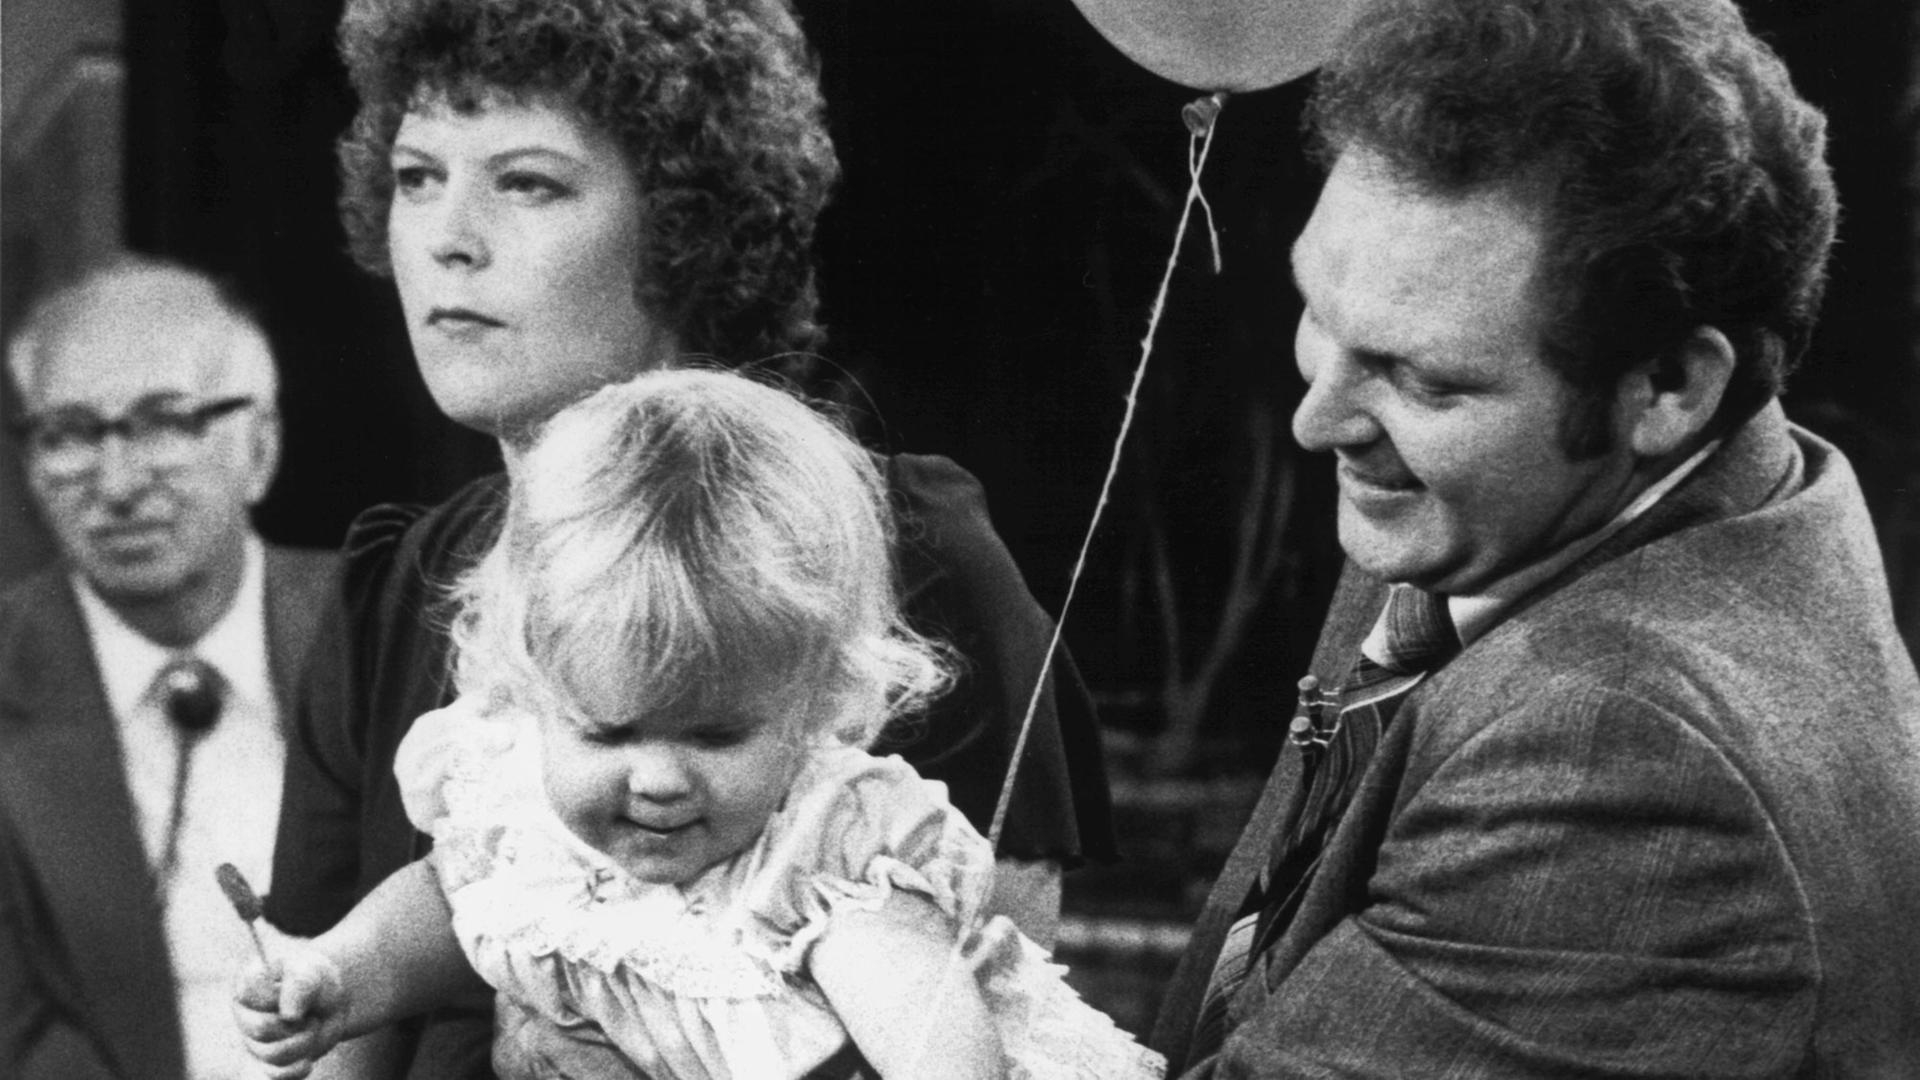 Das erste Retortenbaby der Welt, Louise Joy Brown, mit ihren Eltern John (r) und Lesley bei ihrem ersten Fernsehauftritt in der amerikanischen "Donahue Show" (Sendung mit Phil Donahue) in Chicago am 7. September 1979. Das durch künstliche Befruchtung außerhalb des Körpers der Mutter gezeugte Baby wurde am 25. Juli 1978 in Großbritannien geboren. |